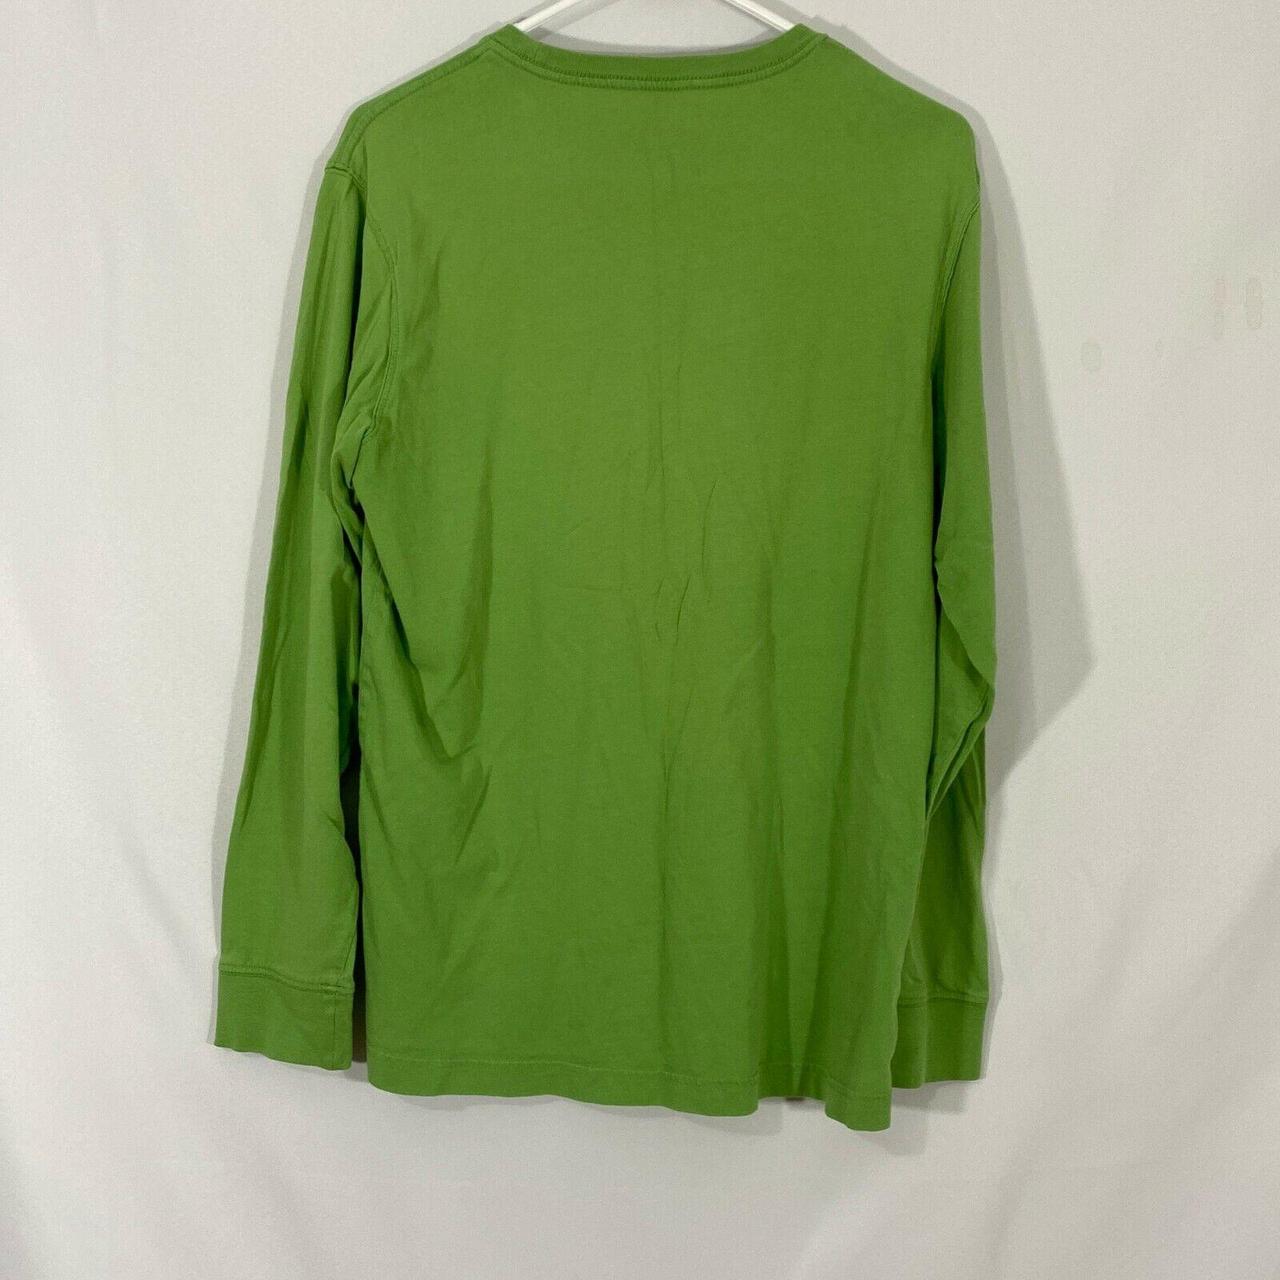 Eddie Bauer Men's Green Sweatshirt | Depop